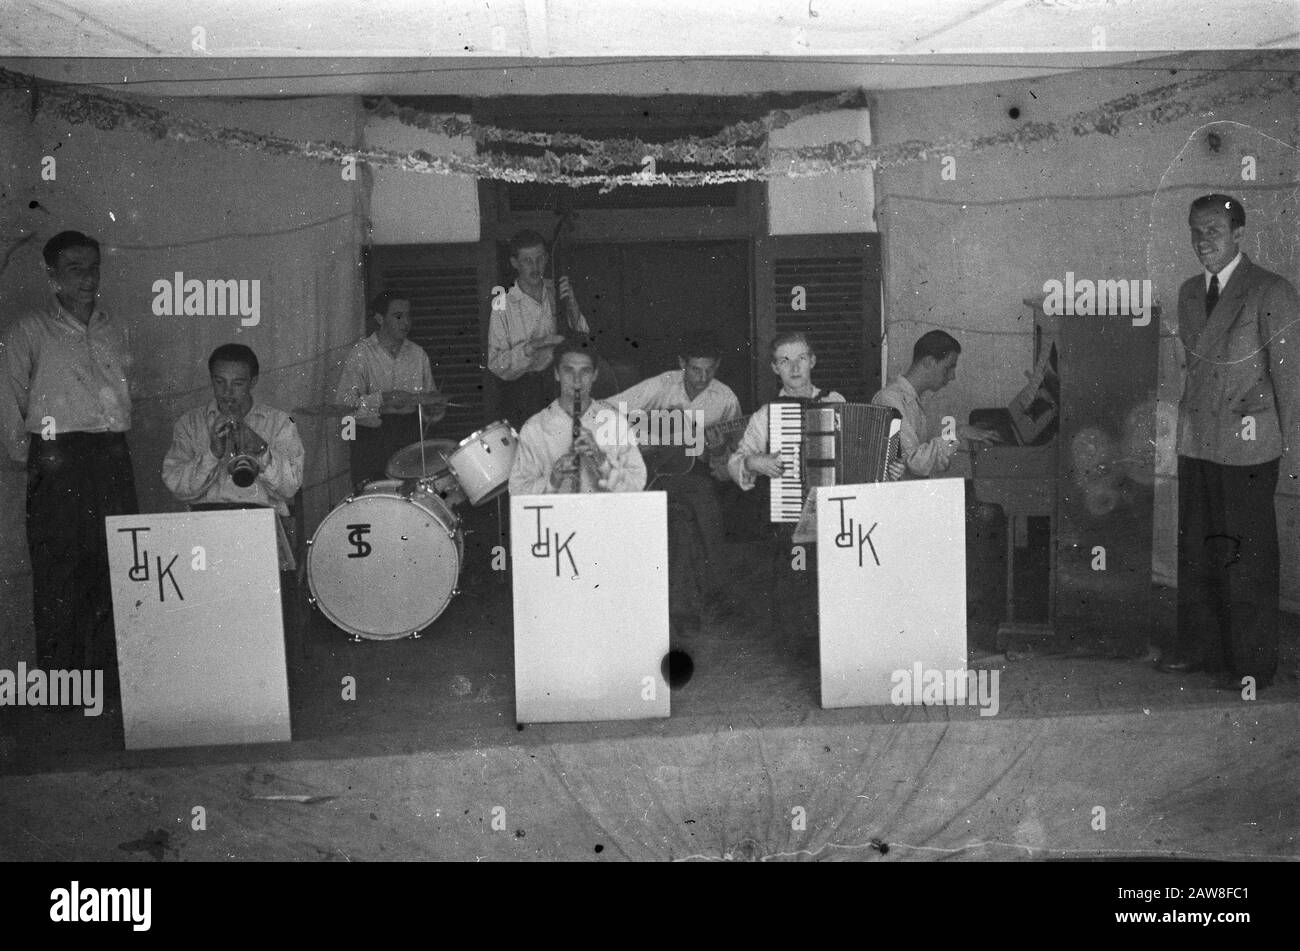 Groupe De Musique Tdk Date: Mai 1949 Lieu: Indonésie Hollandais East Indies Banque D'Images